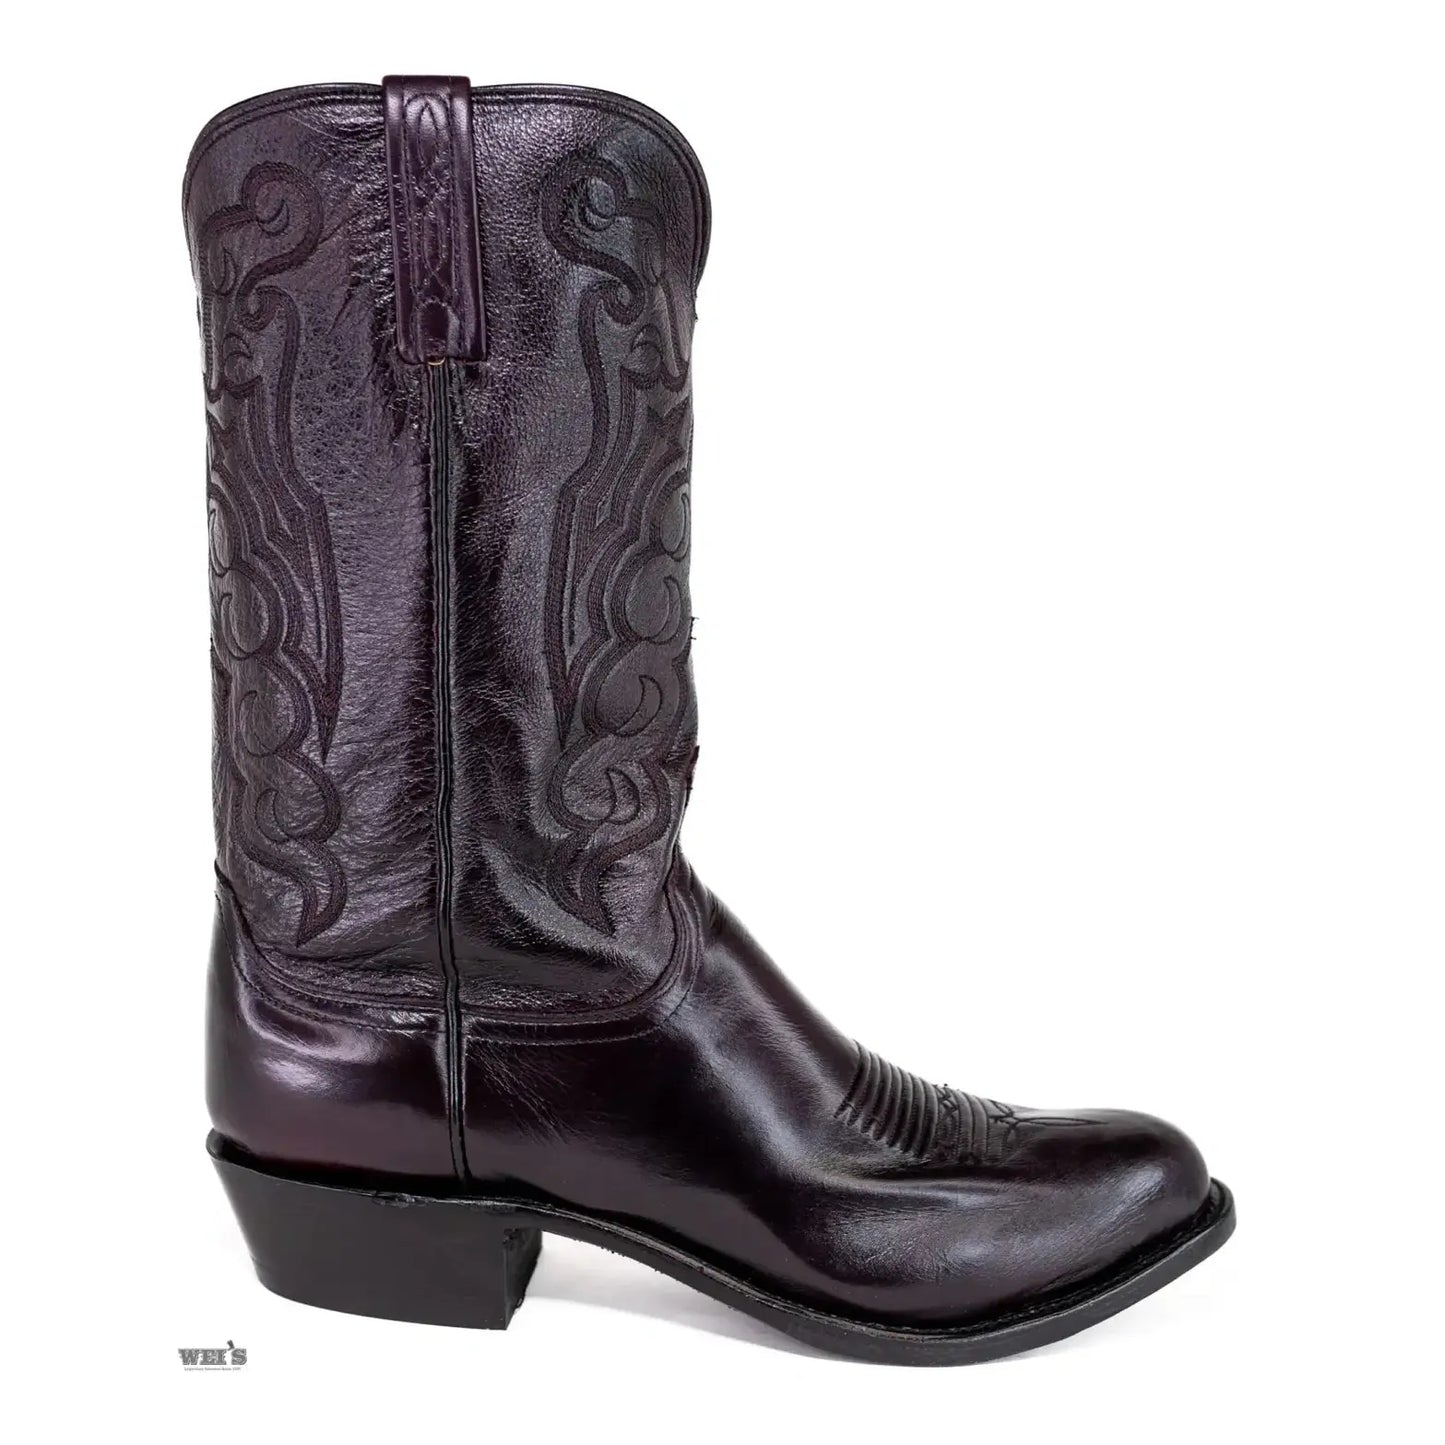 Lucchese 1883 Men's Cowboy Boots 13" Cordoba Calf Black N1614.R4